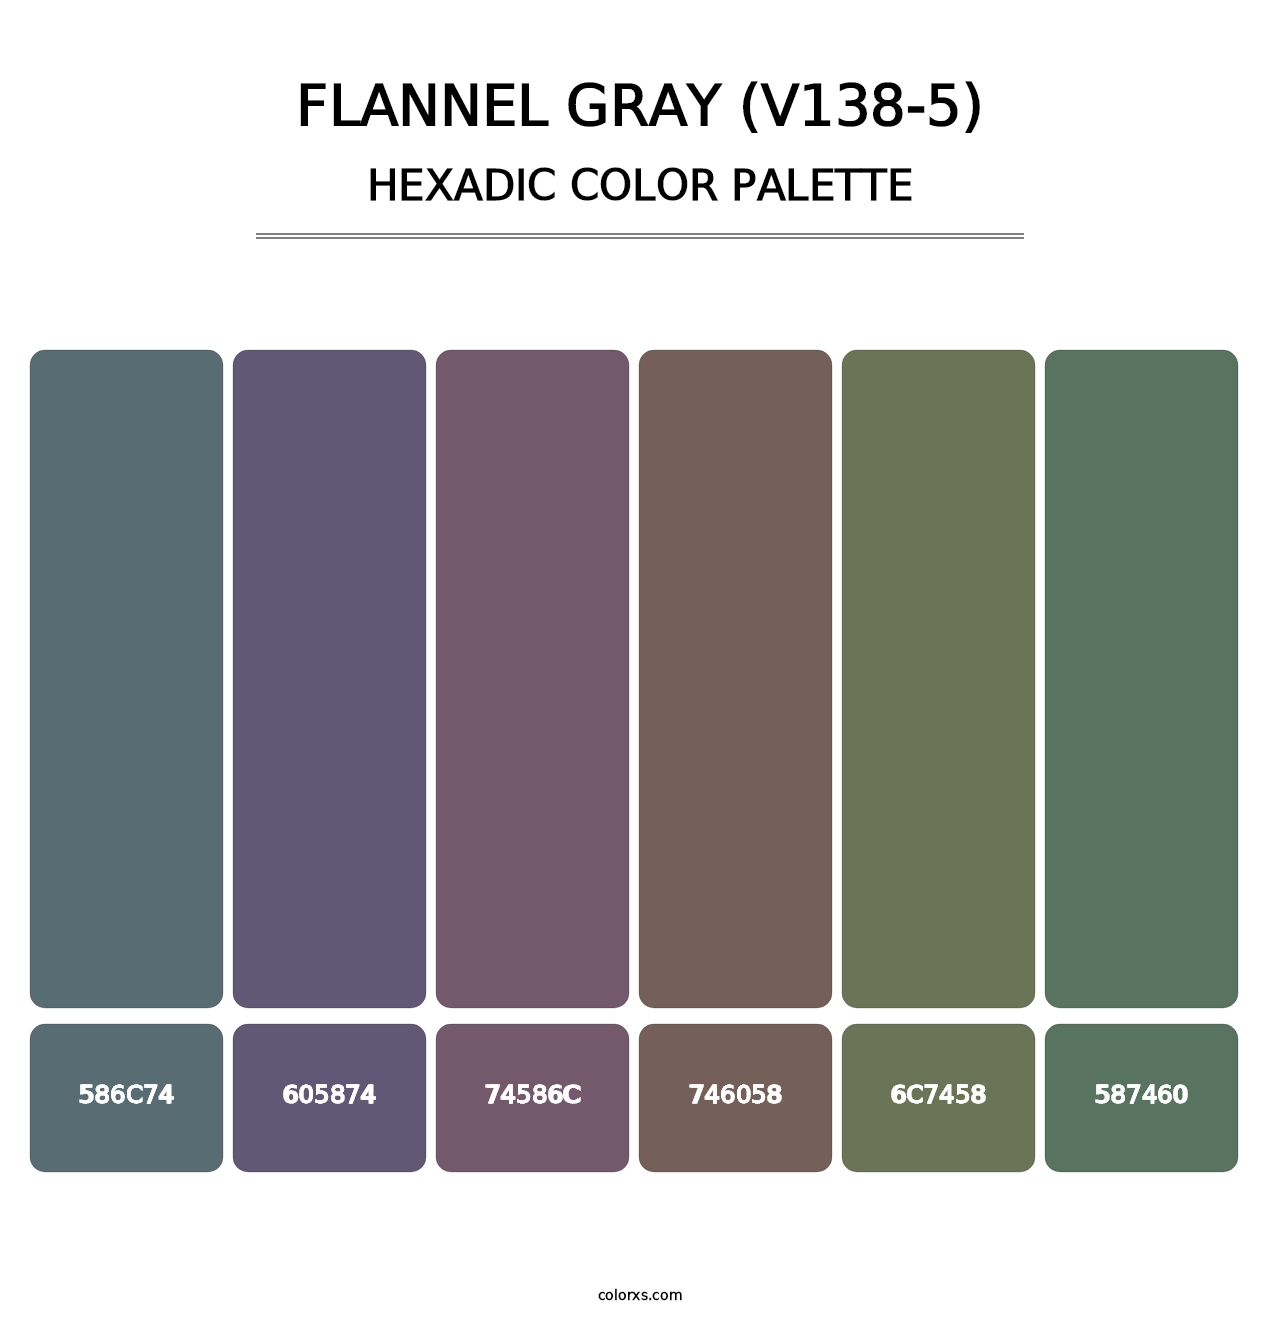 Flannel Gray (V138-5) - Hexadic Color Palette